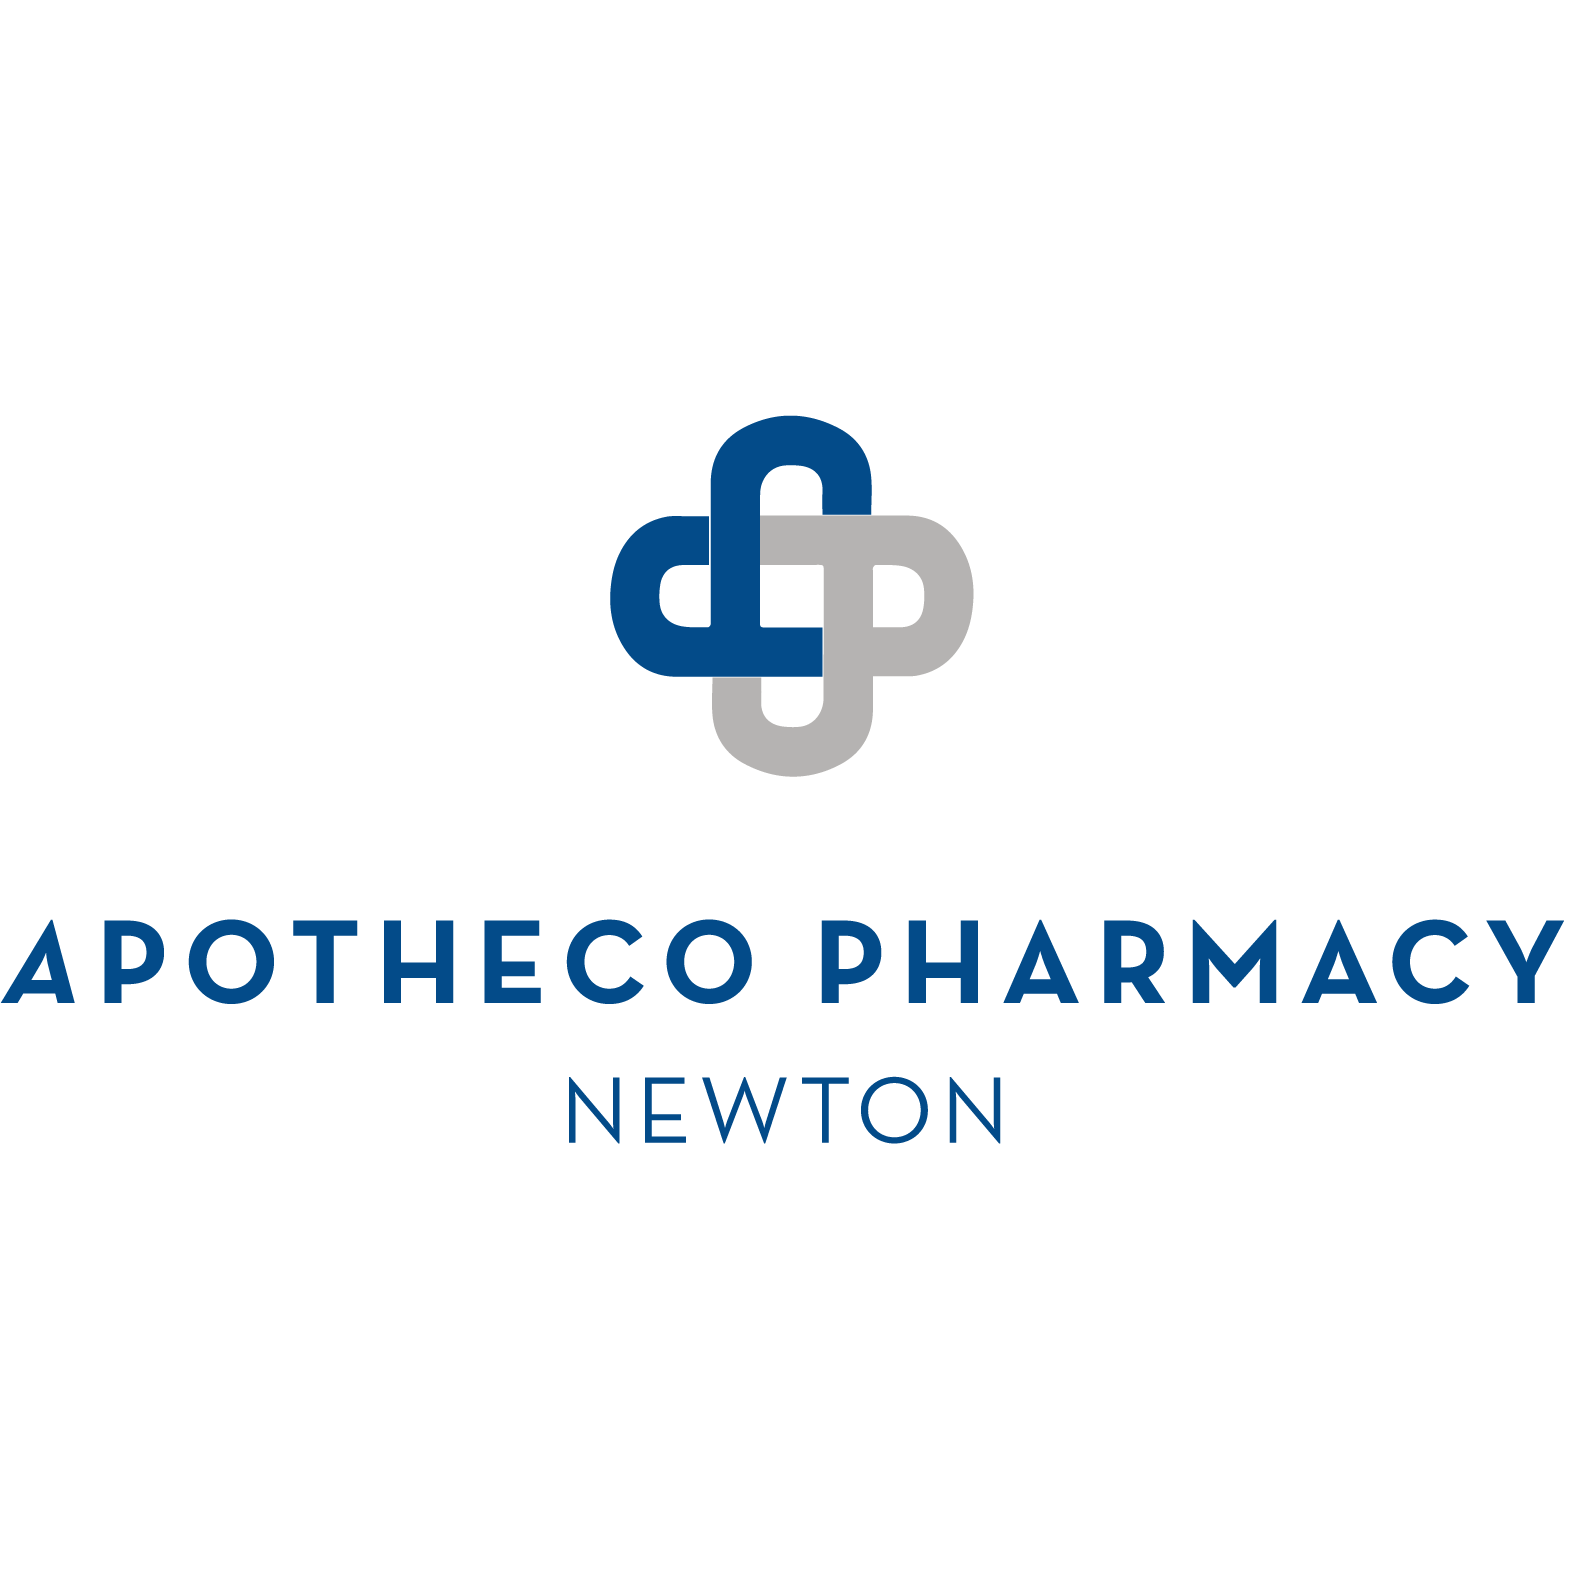 Apotheco Pharmacy Newton